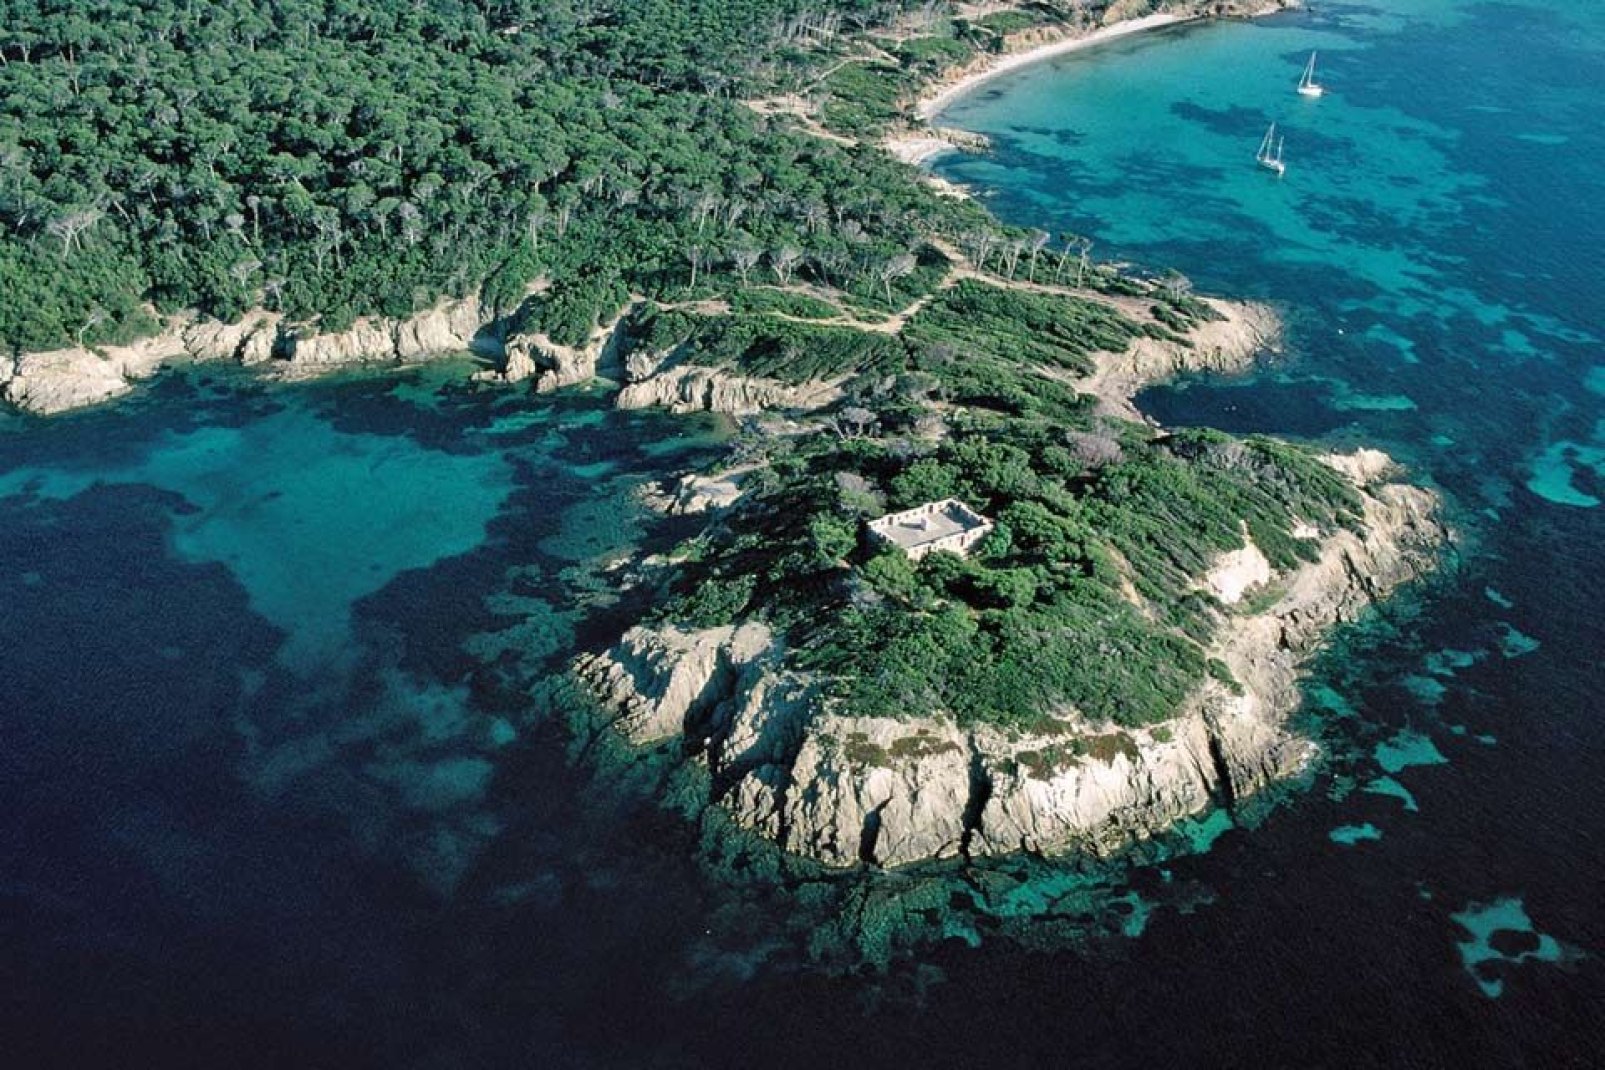 Si tratta della più grande tra le isole di Hyères. Vera e propria oasi di pace, l'isola rappresenta un luogo paradisiaco ricco di storia.